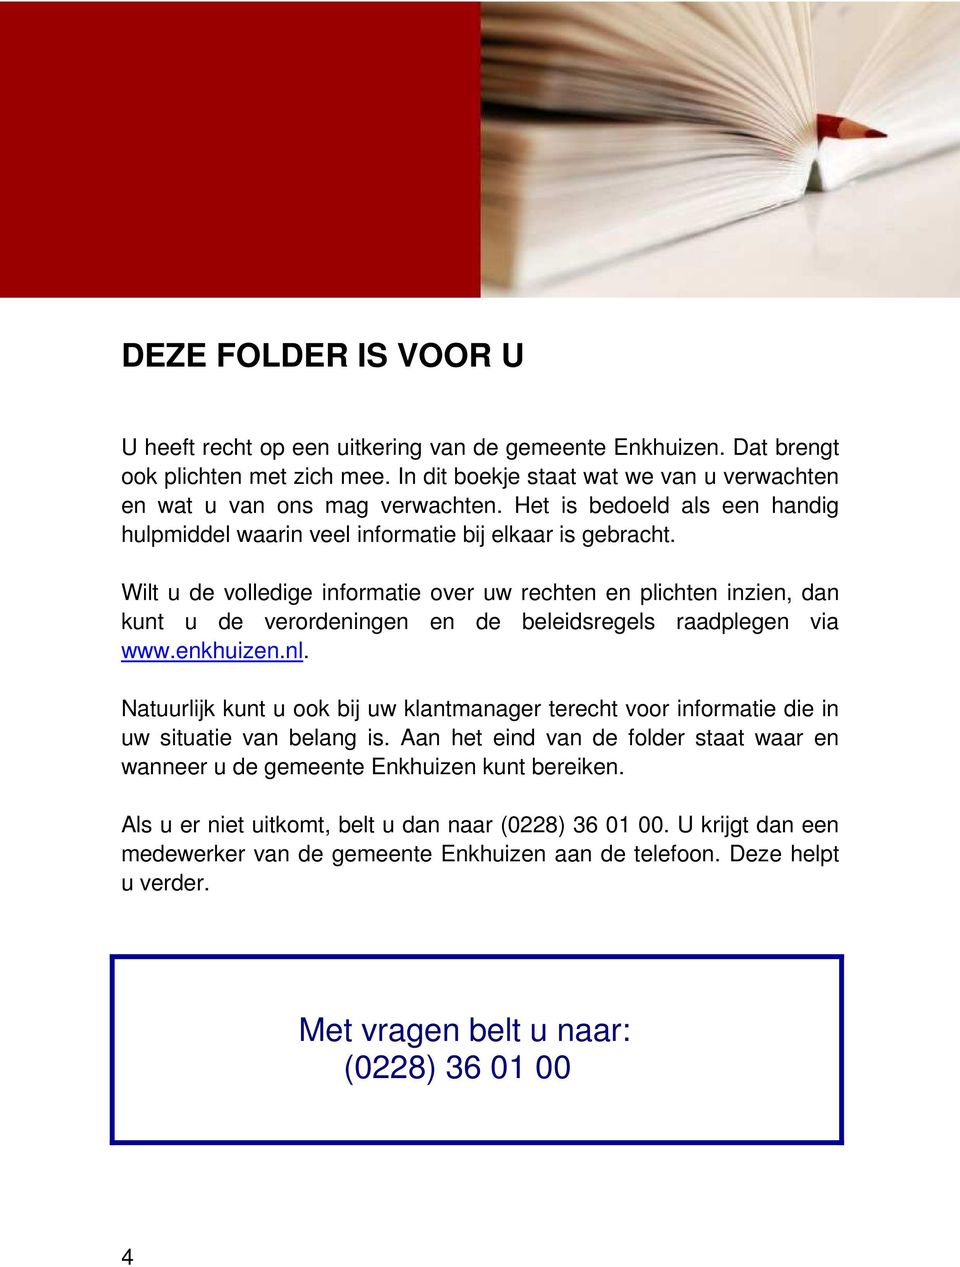 Wilt u de volledige informatie over uw rechten en plichten inzien, dan kunt u de verordeningen en de beleidsregels raadplegen via www.enkhuizen.nl.